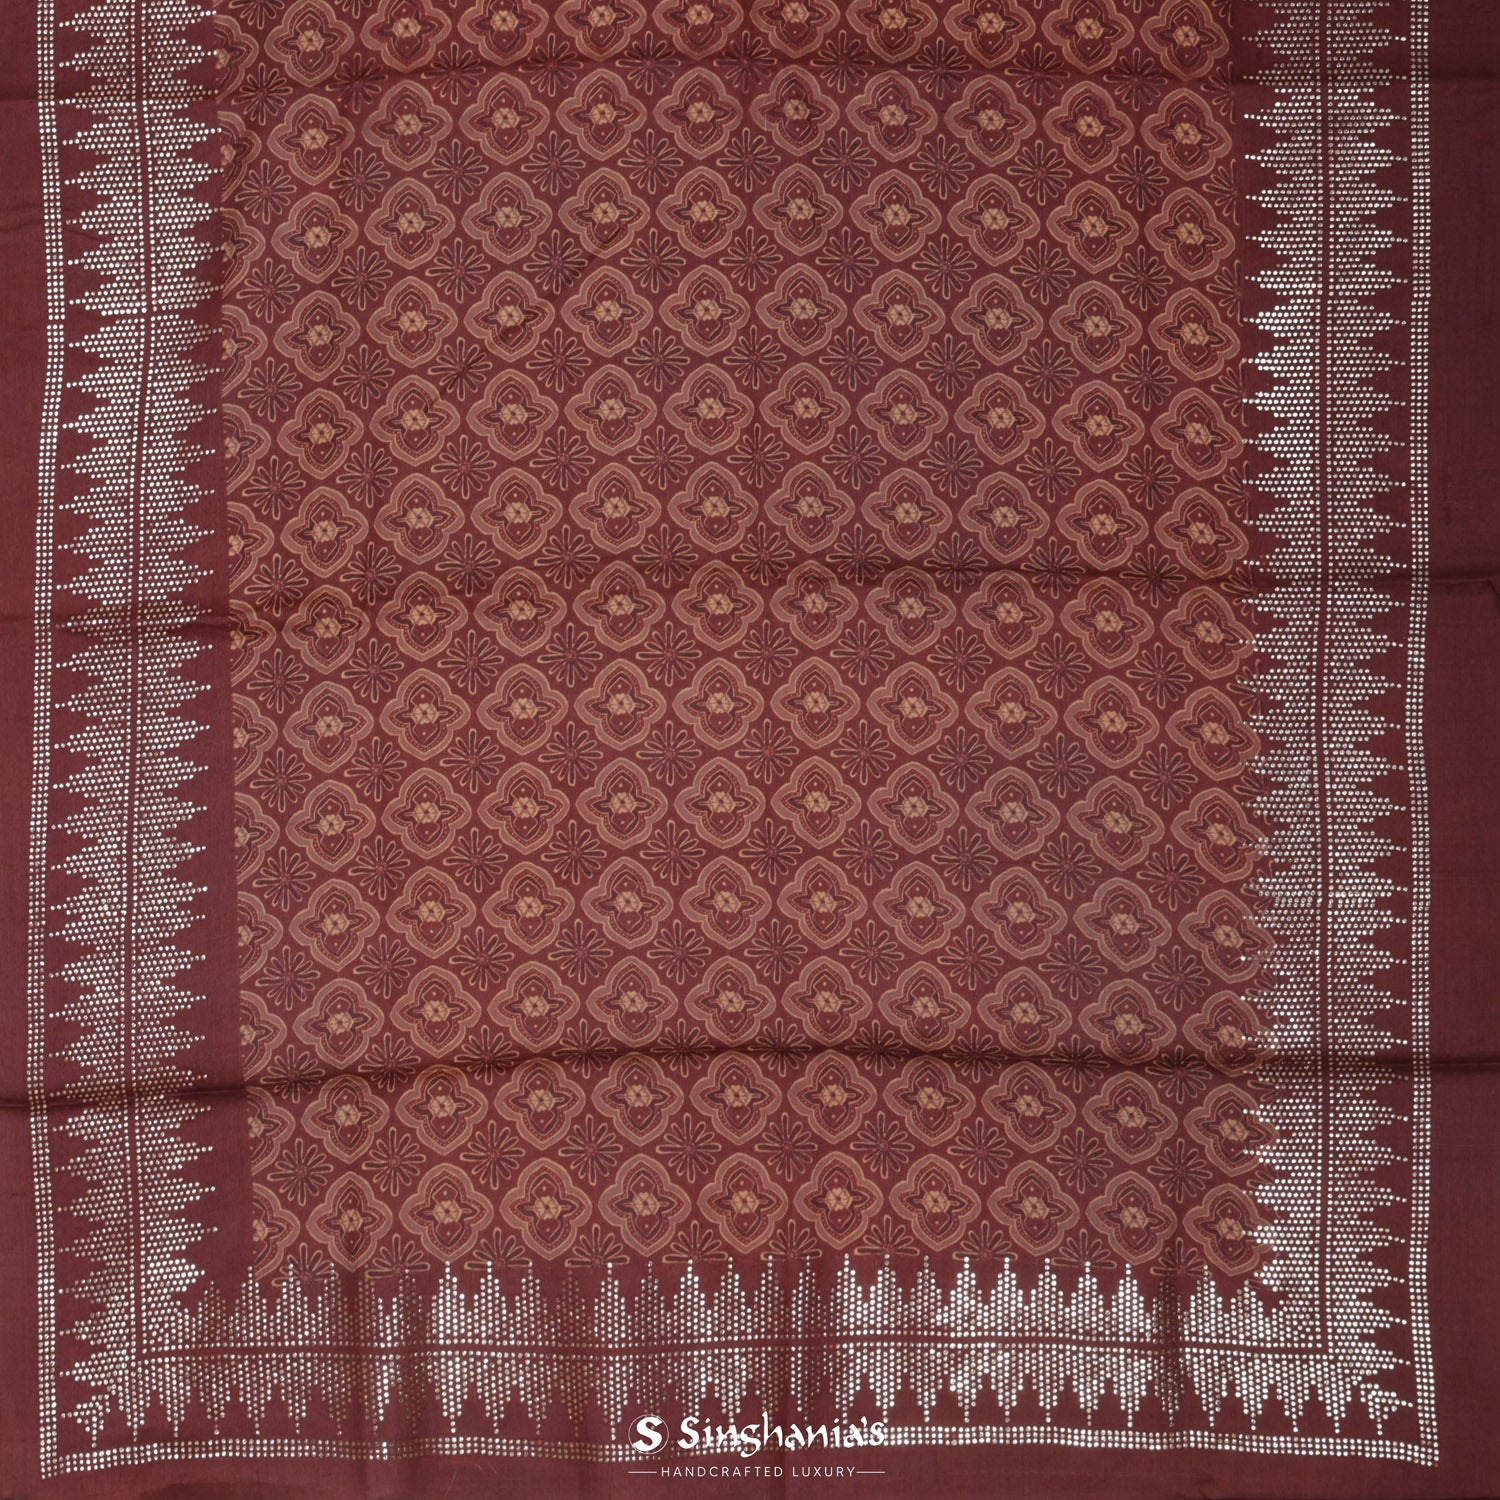 Dark Chestnut Brown Printed Tussar Silk Saree With Ajrakh-Inspired Pattern